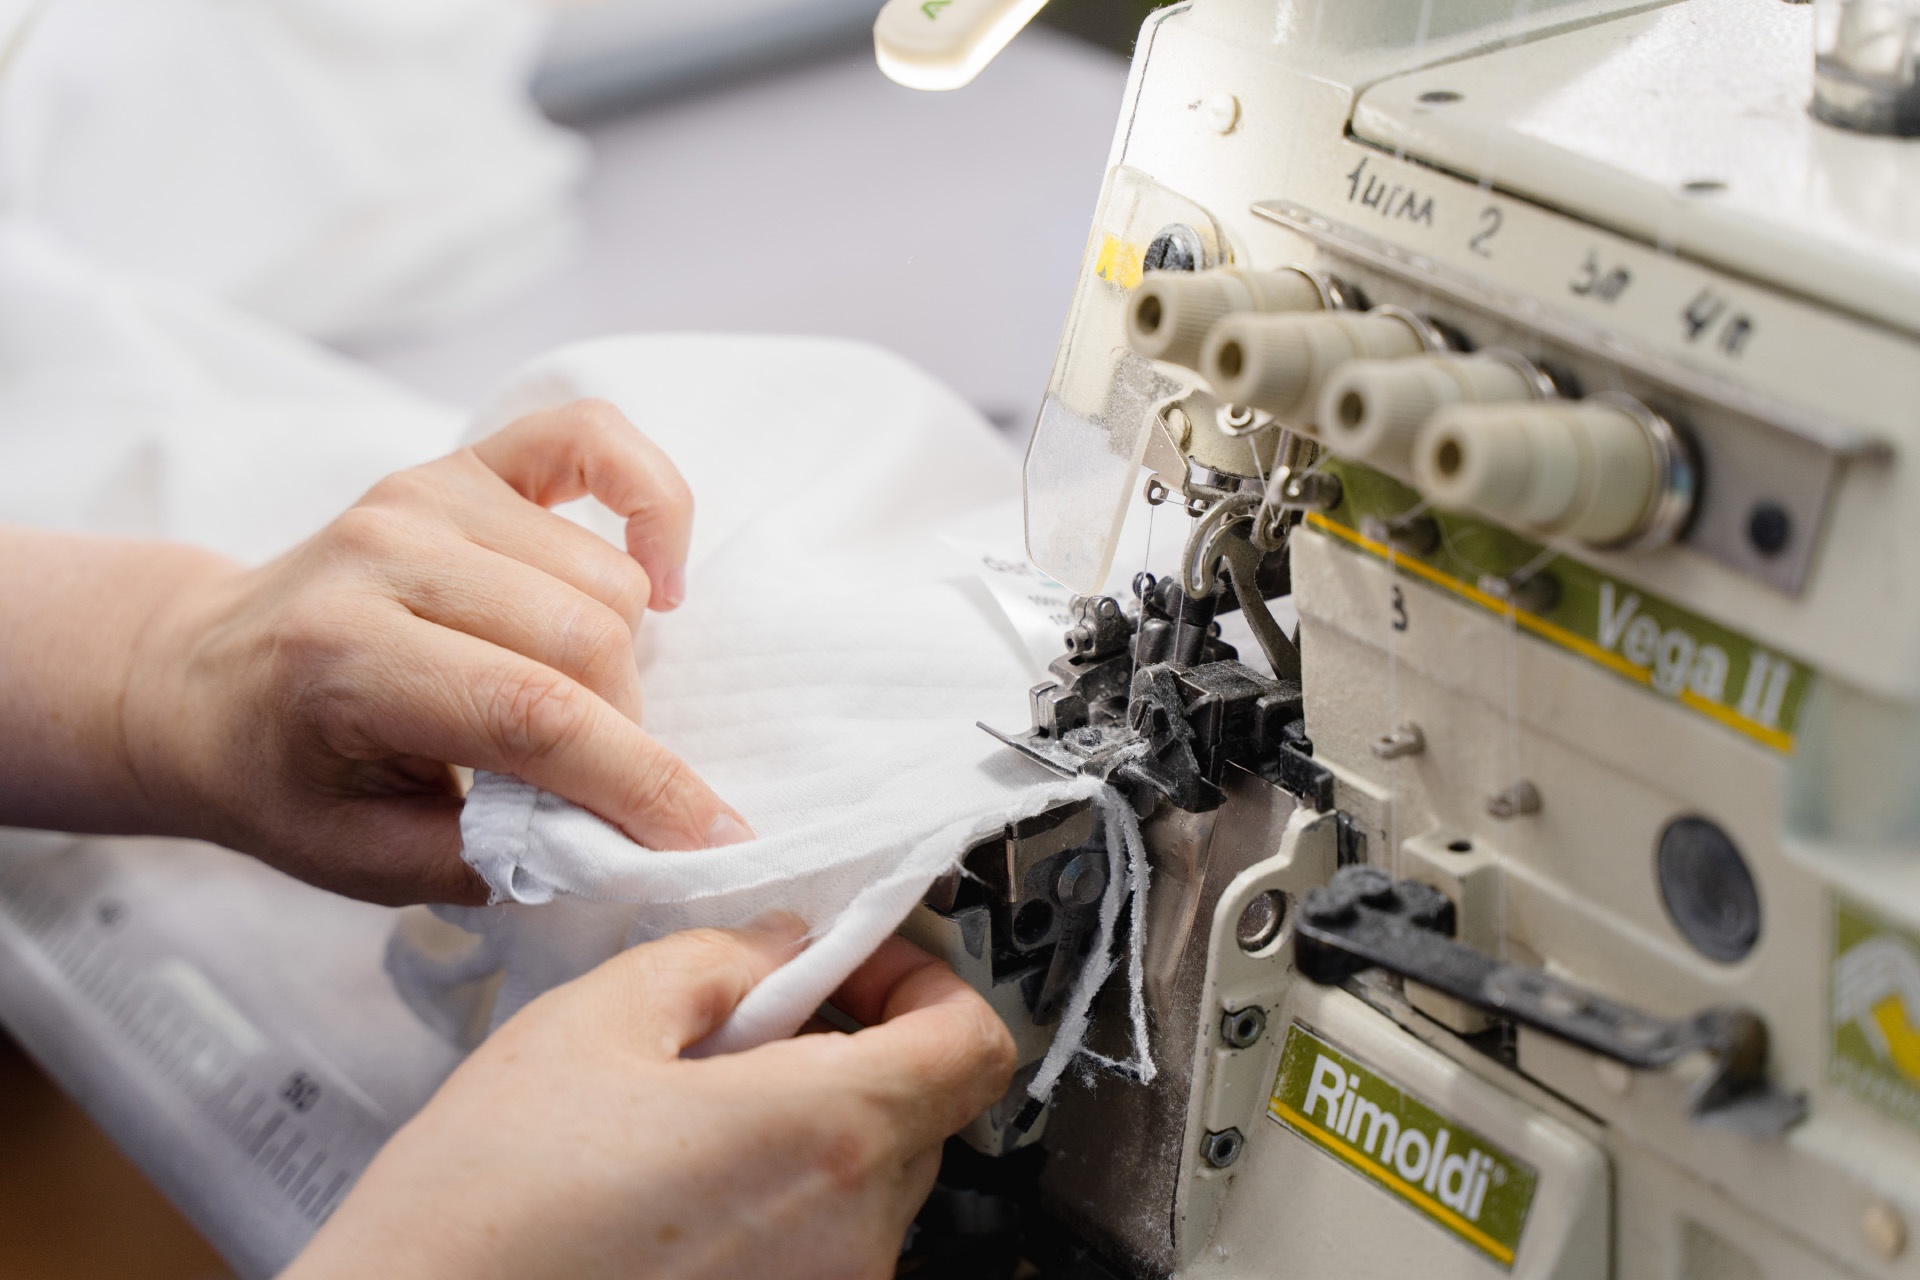 Чтобы справляться с объемами, компания закупила 10 типов швейных машин: одни обрабатывают края, другие — вшивают резинку, третьи делают вышивку, четвертые пришивают этикетки